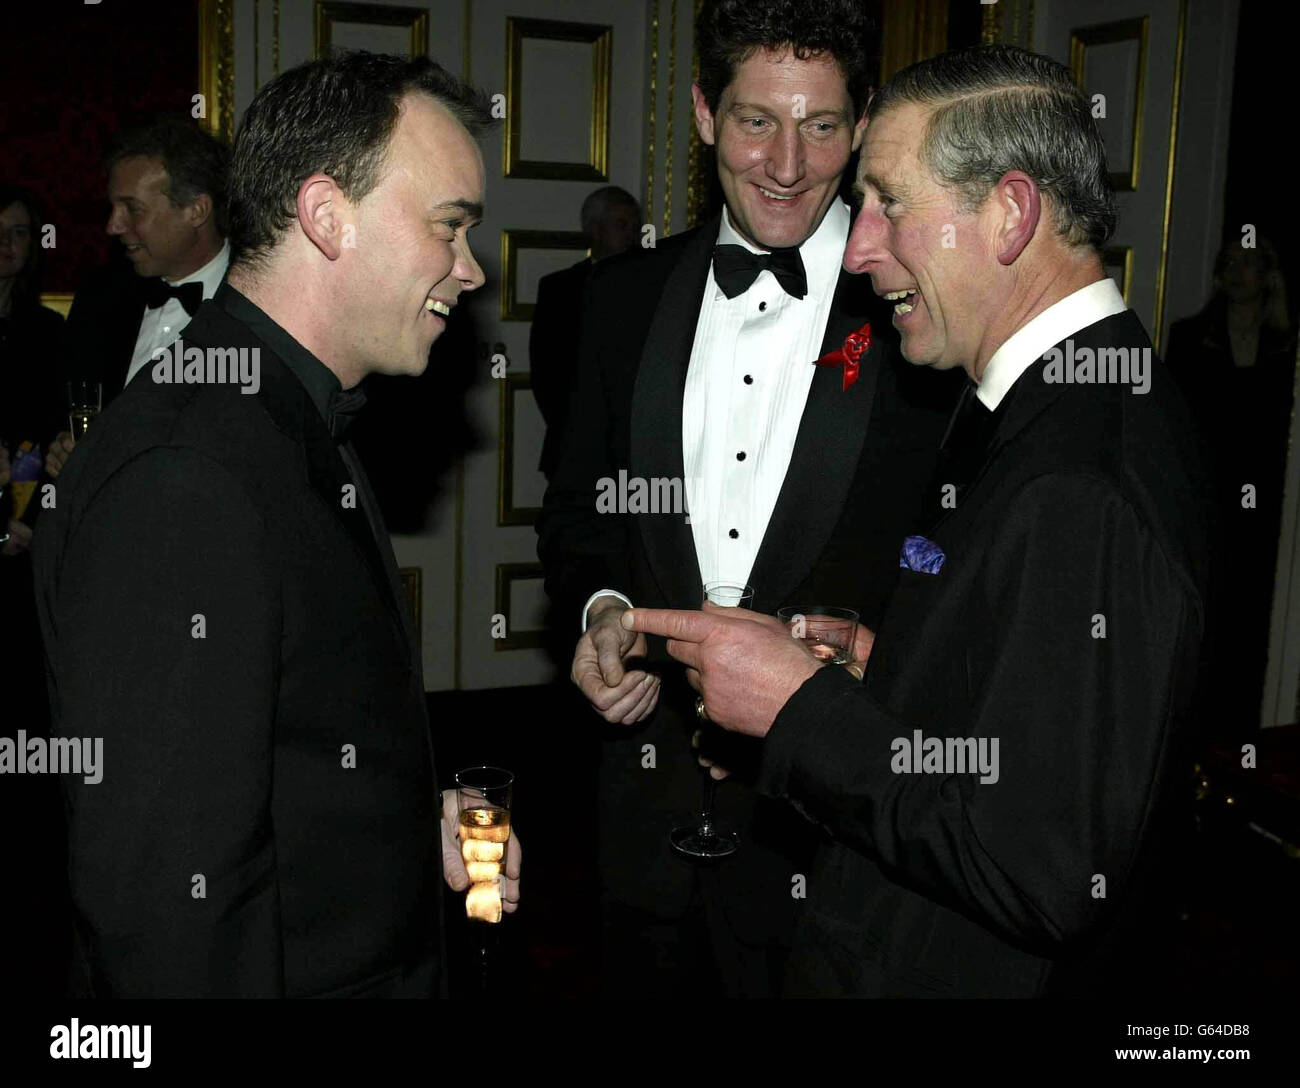 Il Principe del Galles (a destra) che ha ospitato la ventesima cena annuale Terrence Higgins Trust Awards, nei suoi appartamenti di stato al St James's Palace, incontra l'attore di Eastenders Todd Carty. Foto Stock